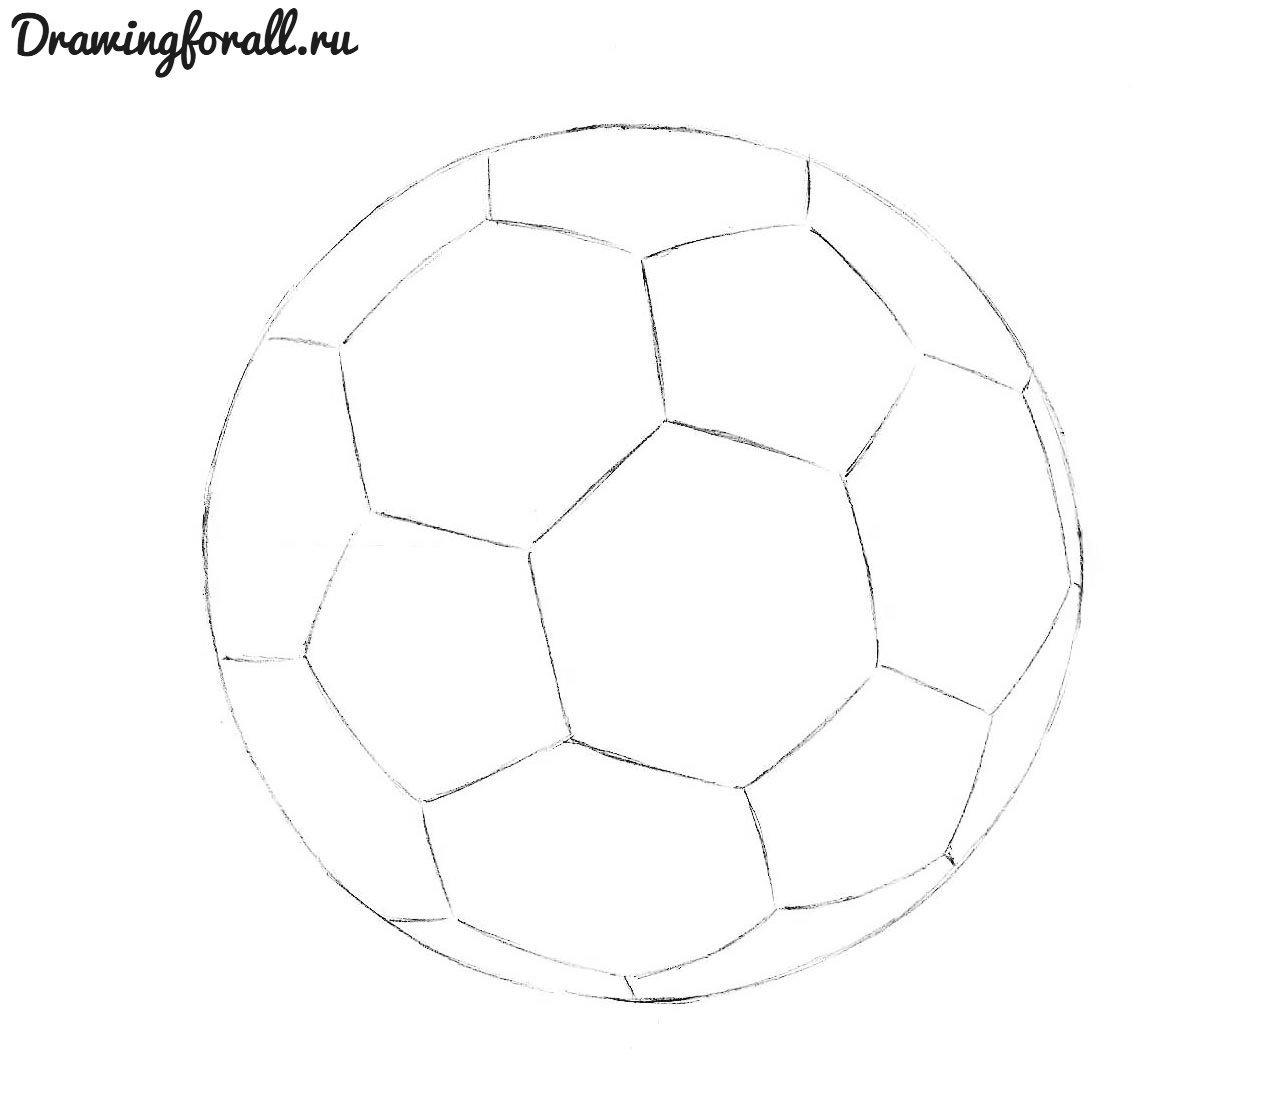 Футбольный мяч рисунок для детей карандашом